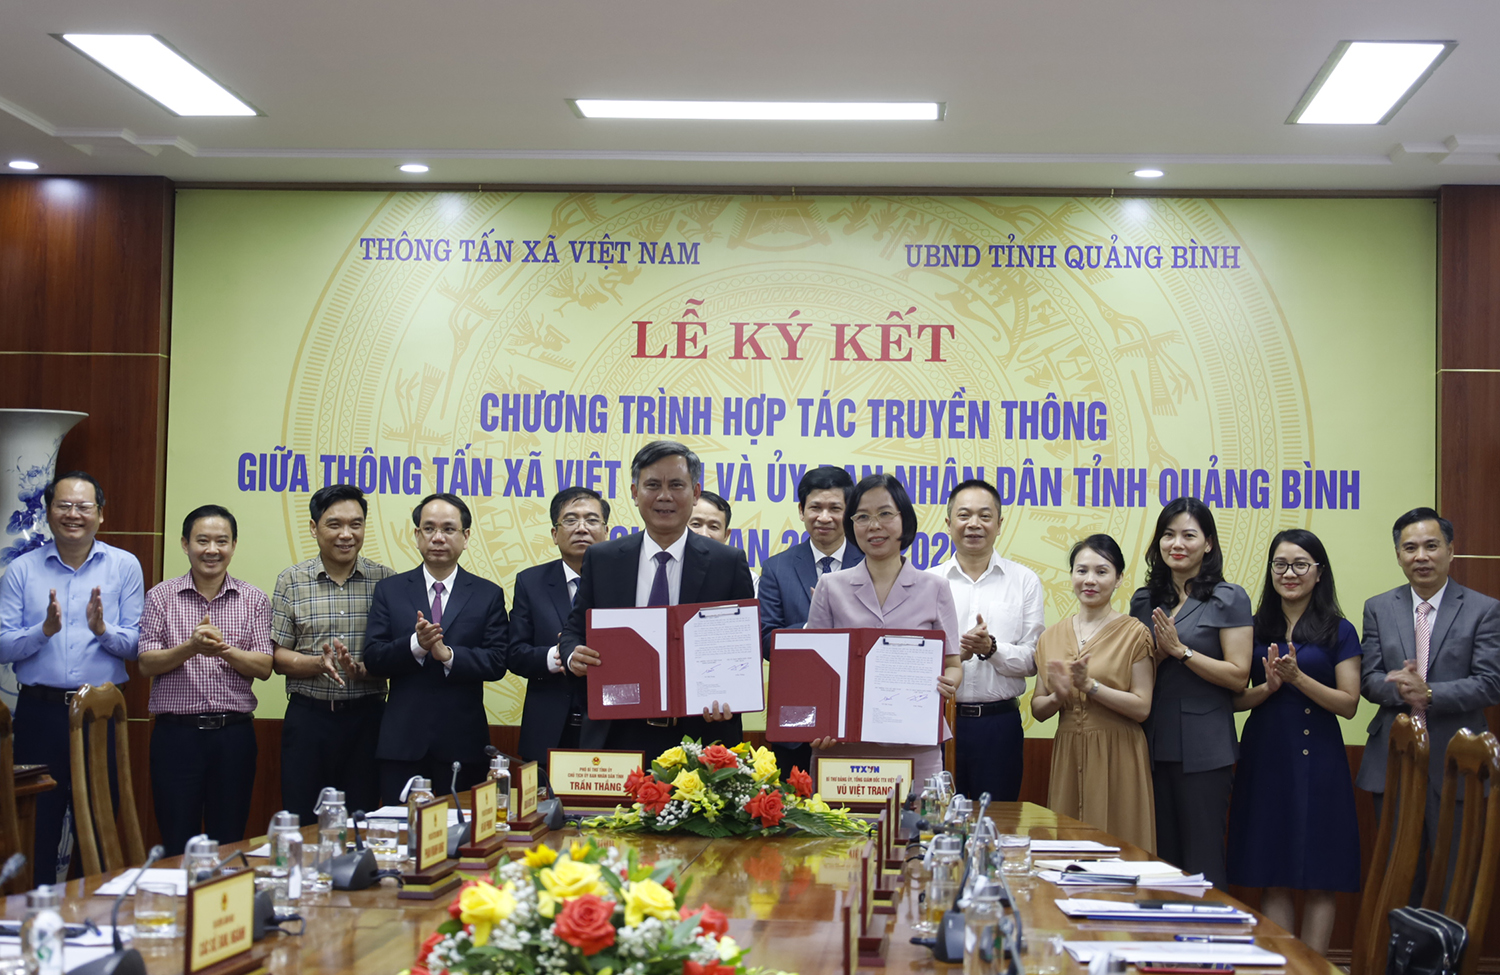 Đồng chí Chủ tịch UBND tỉnh Trần Thắng và Tổng Giám đốc TTX Việt Nam Vũ Việt Trang ký kết chương trình hợp tác truyền thông giai đoạn 2023-2026.